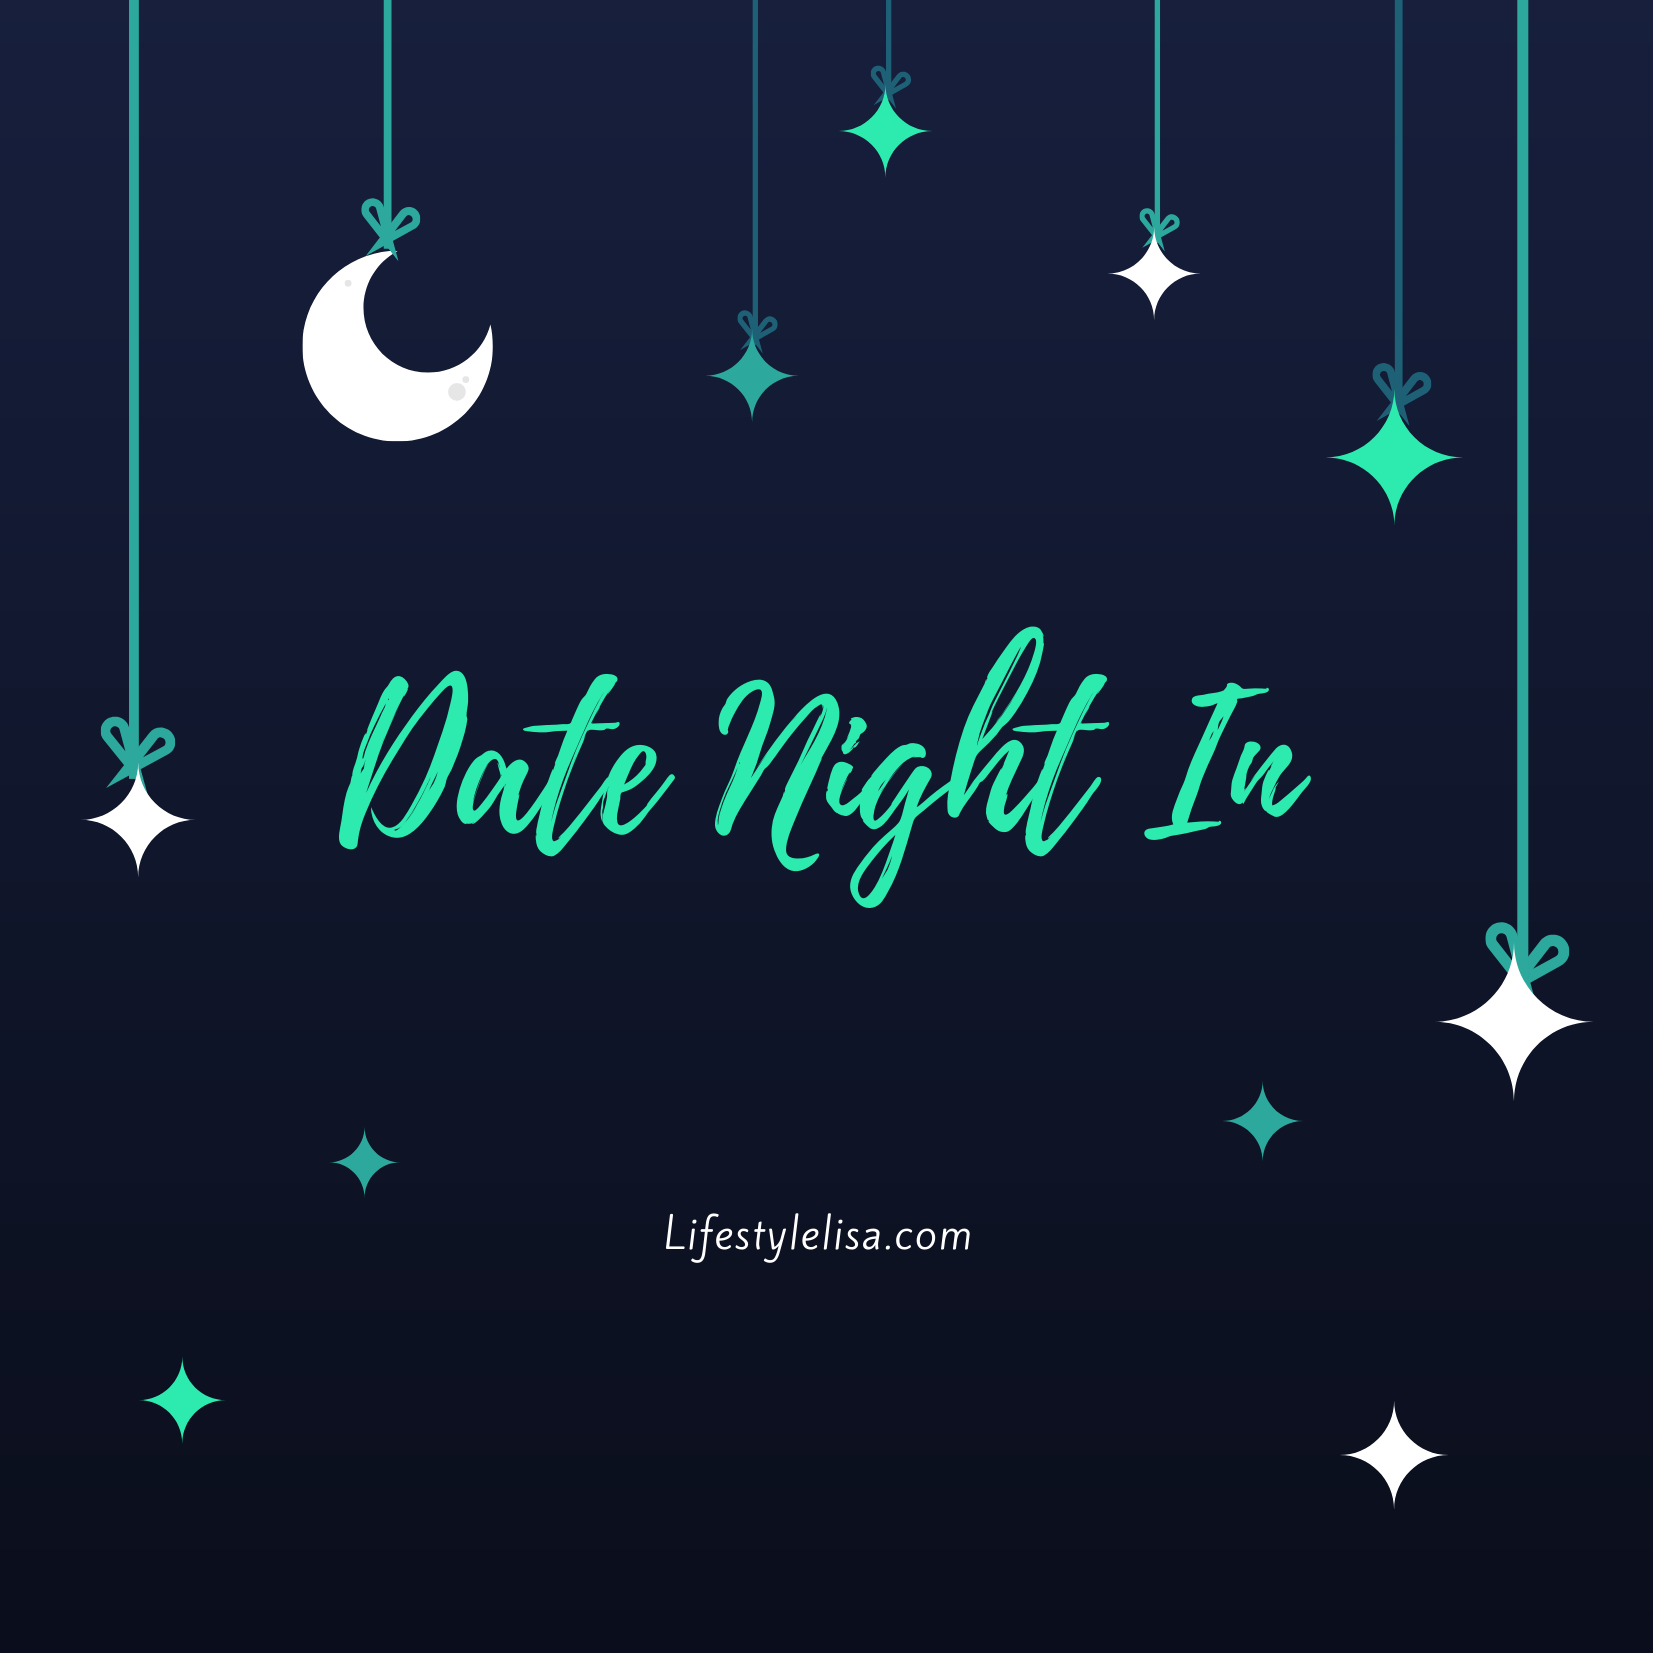 Date Night In